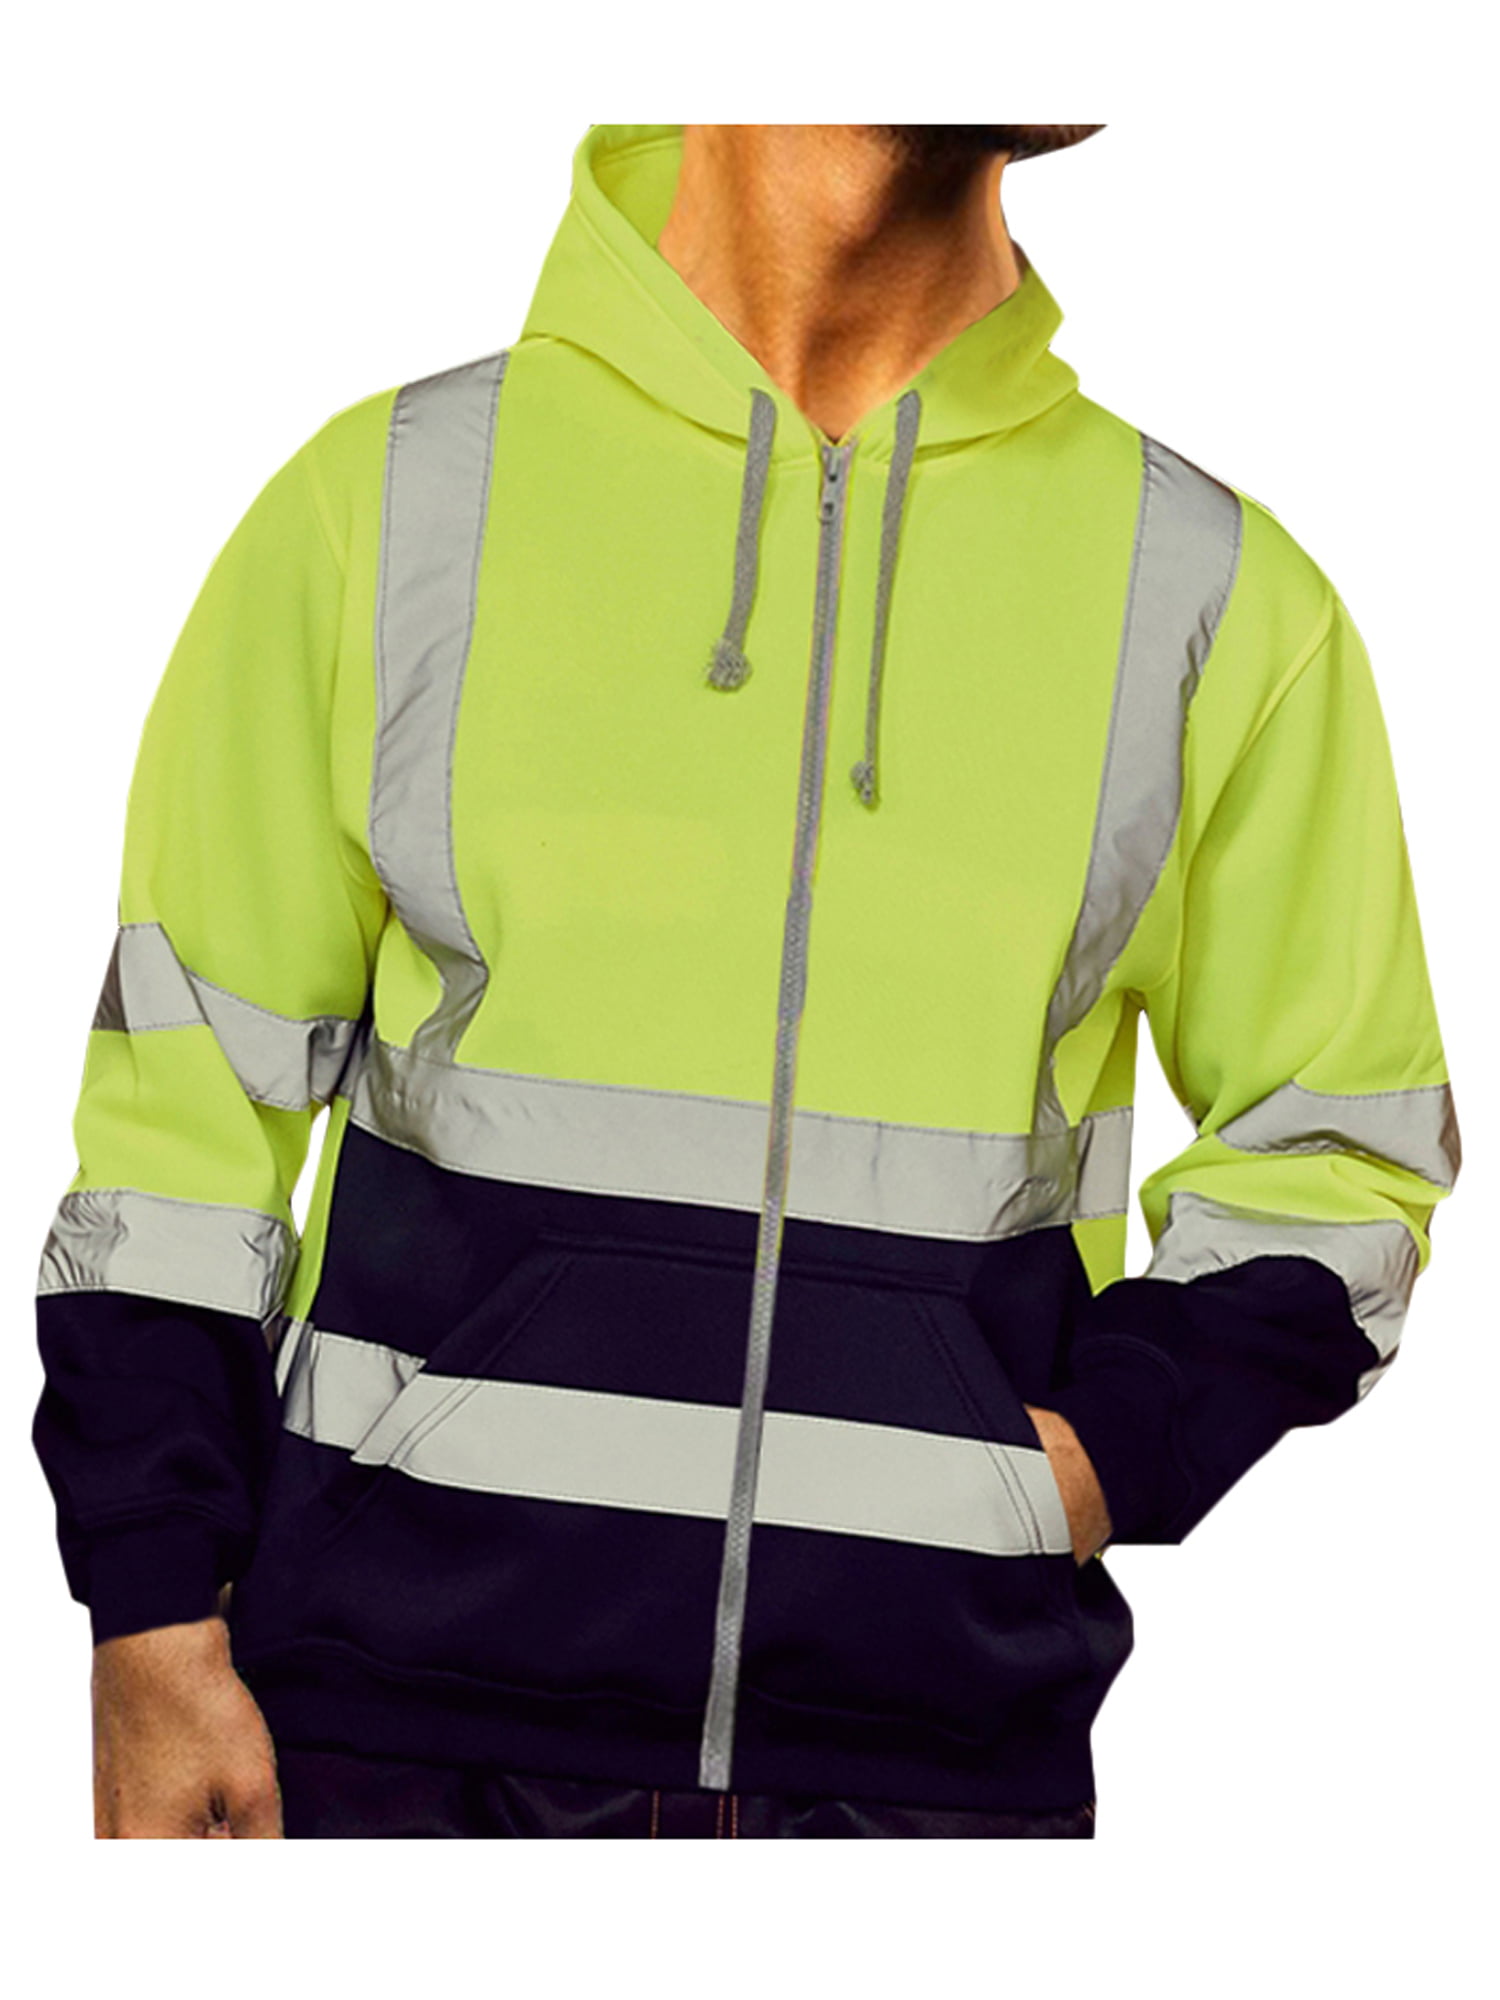 HI VIS VIZ Mens HIGH VISIBILITY Safety Reflective Jacket Work Hoodies Coat 